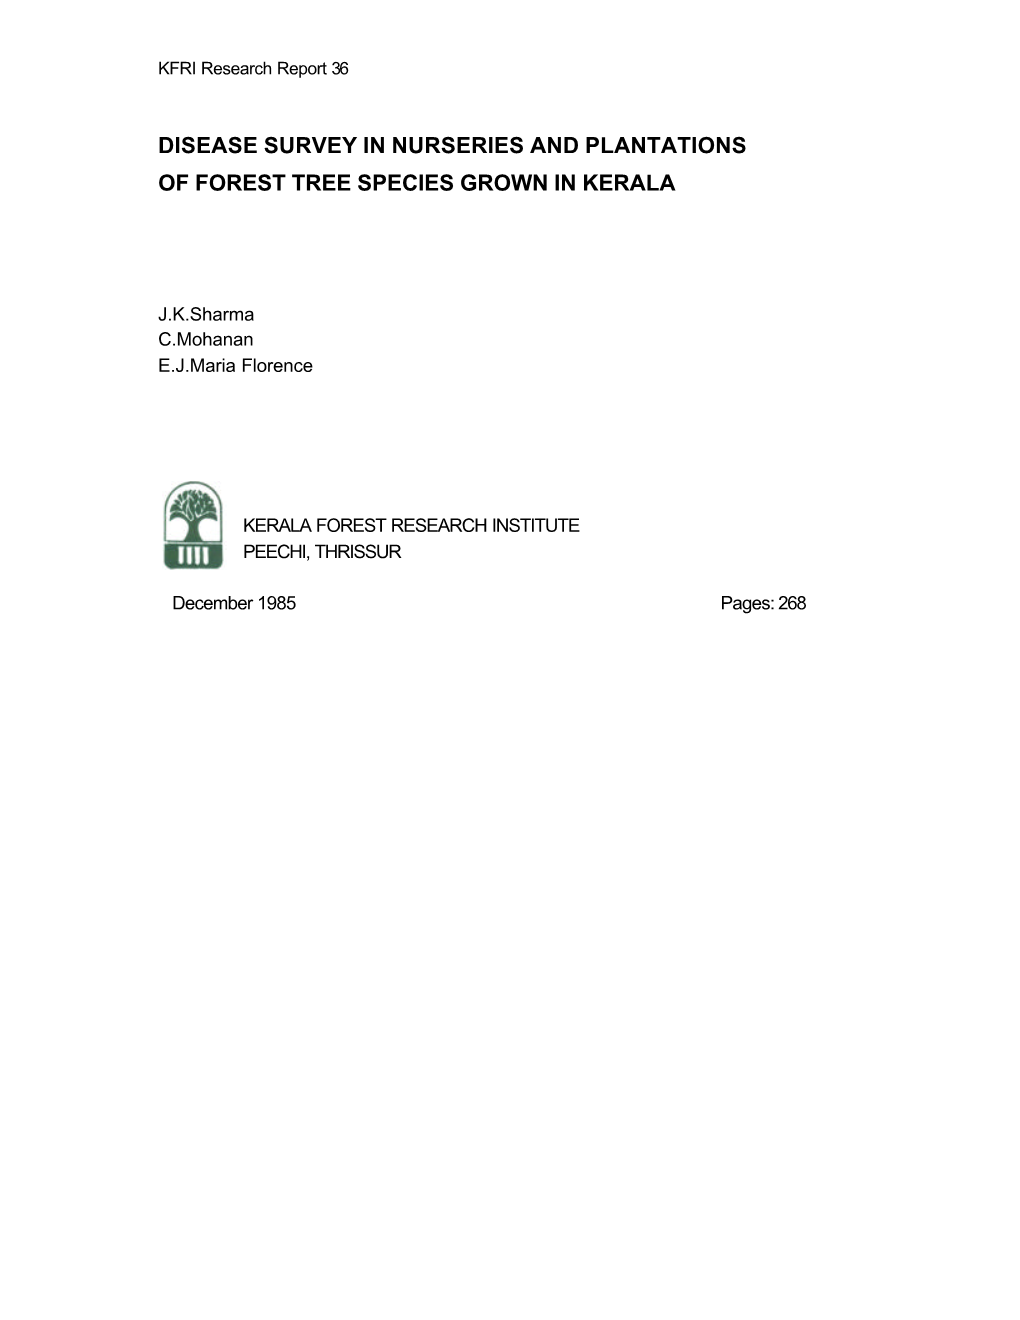 Disease Survey in Nurseries and Plantations of Forest Tree Species Grown in Kerala